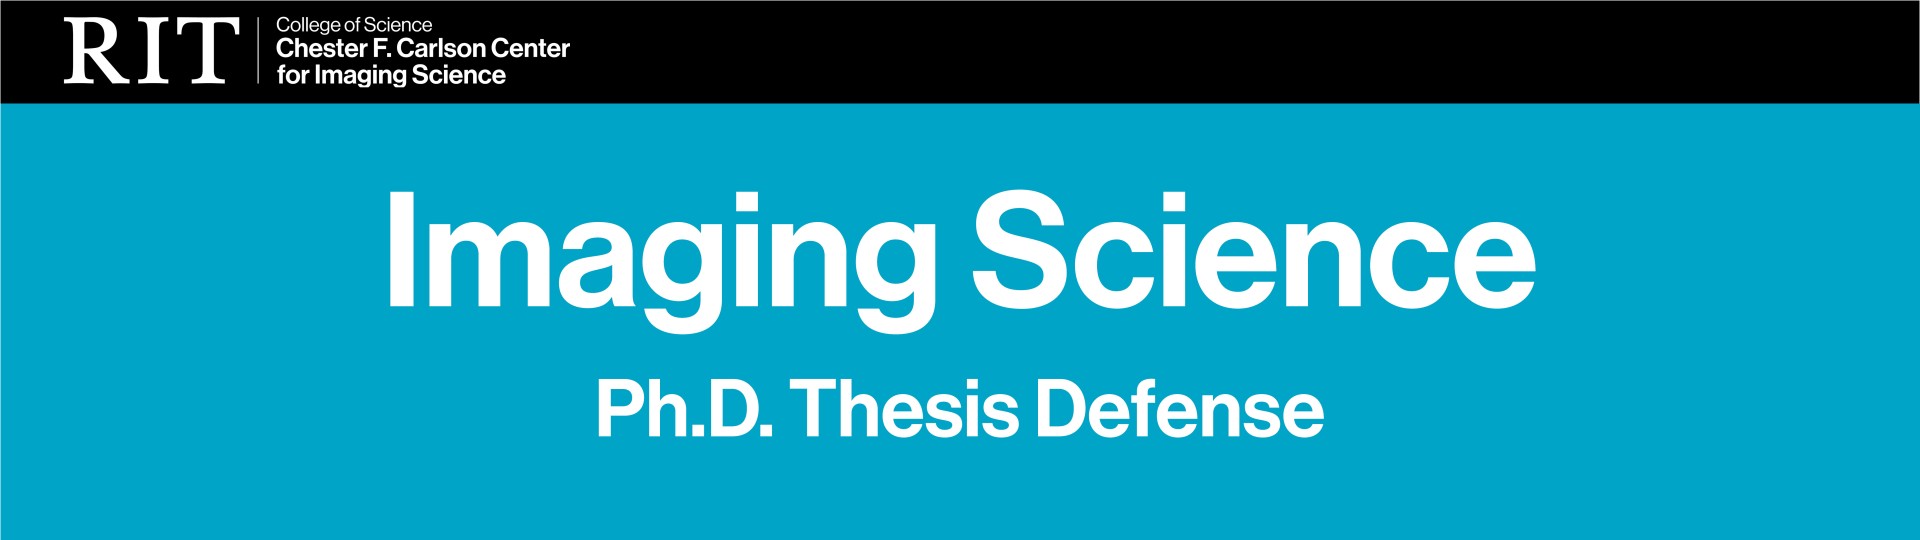 imaging science ph.d. defense